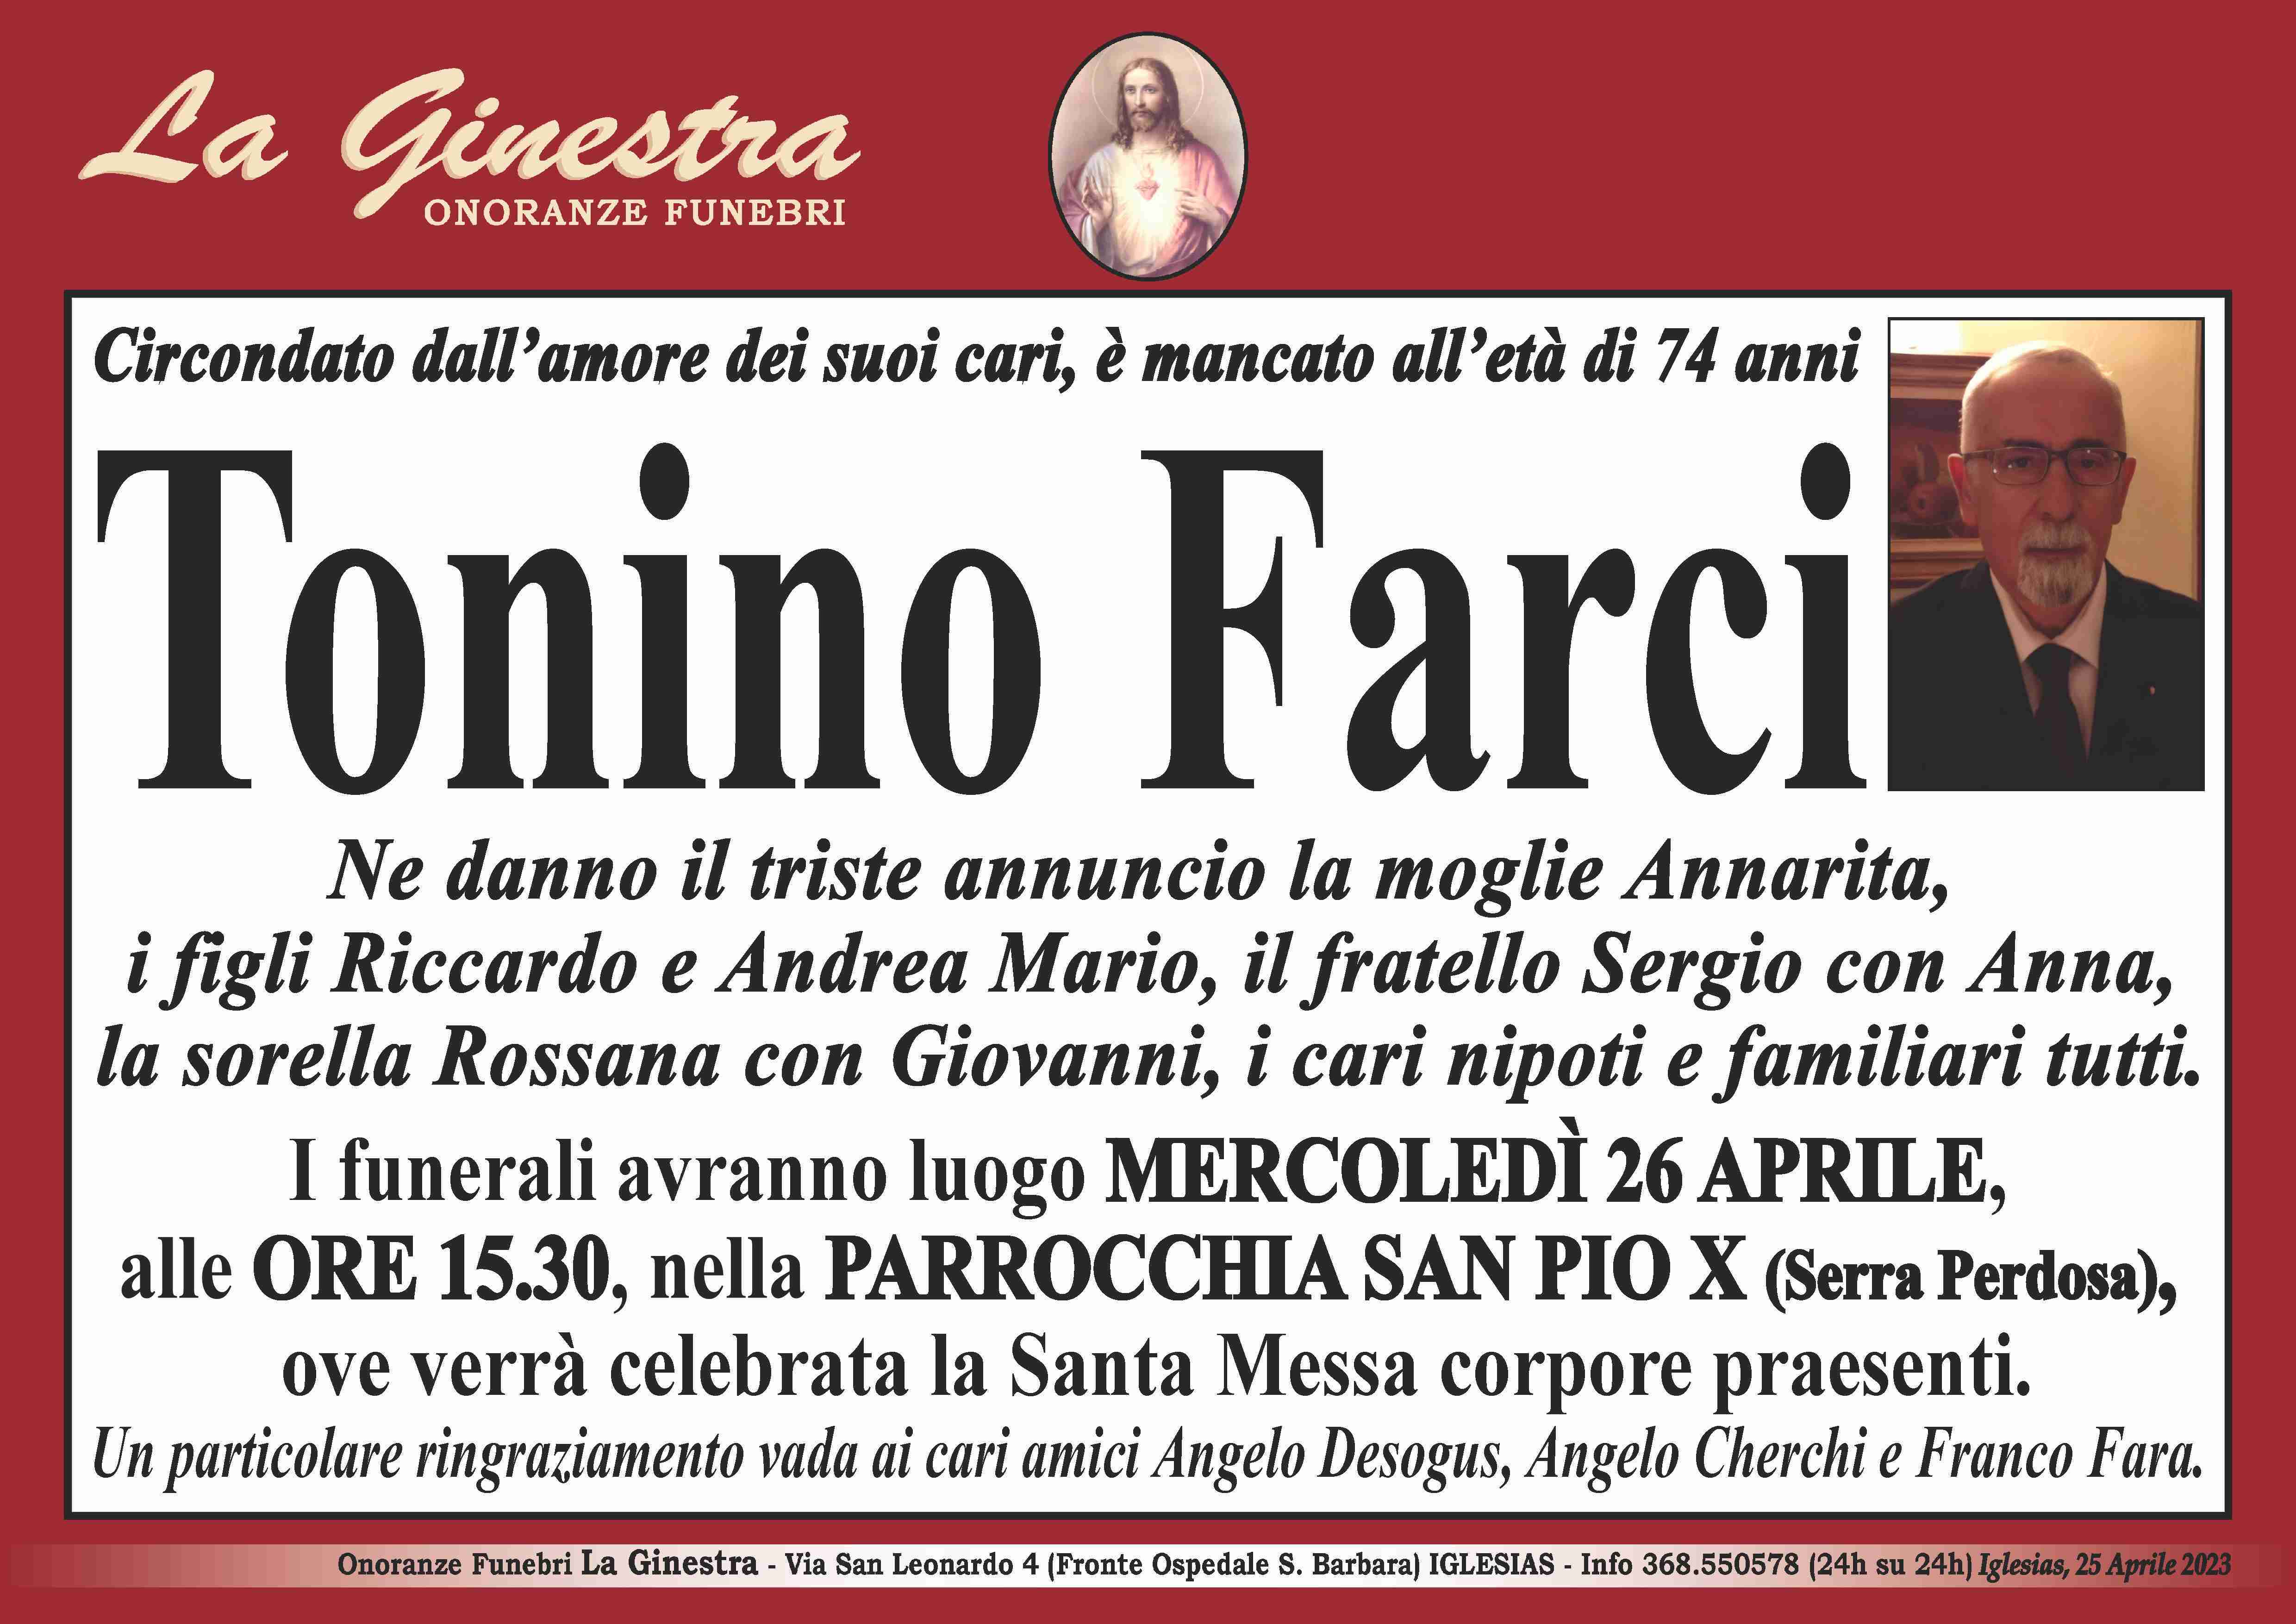 Antonio Farci